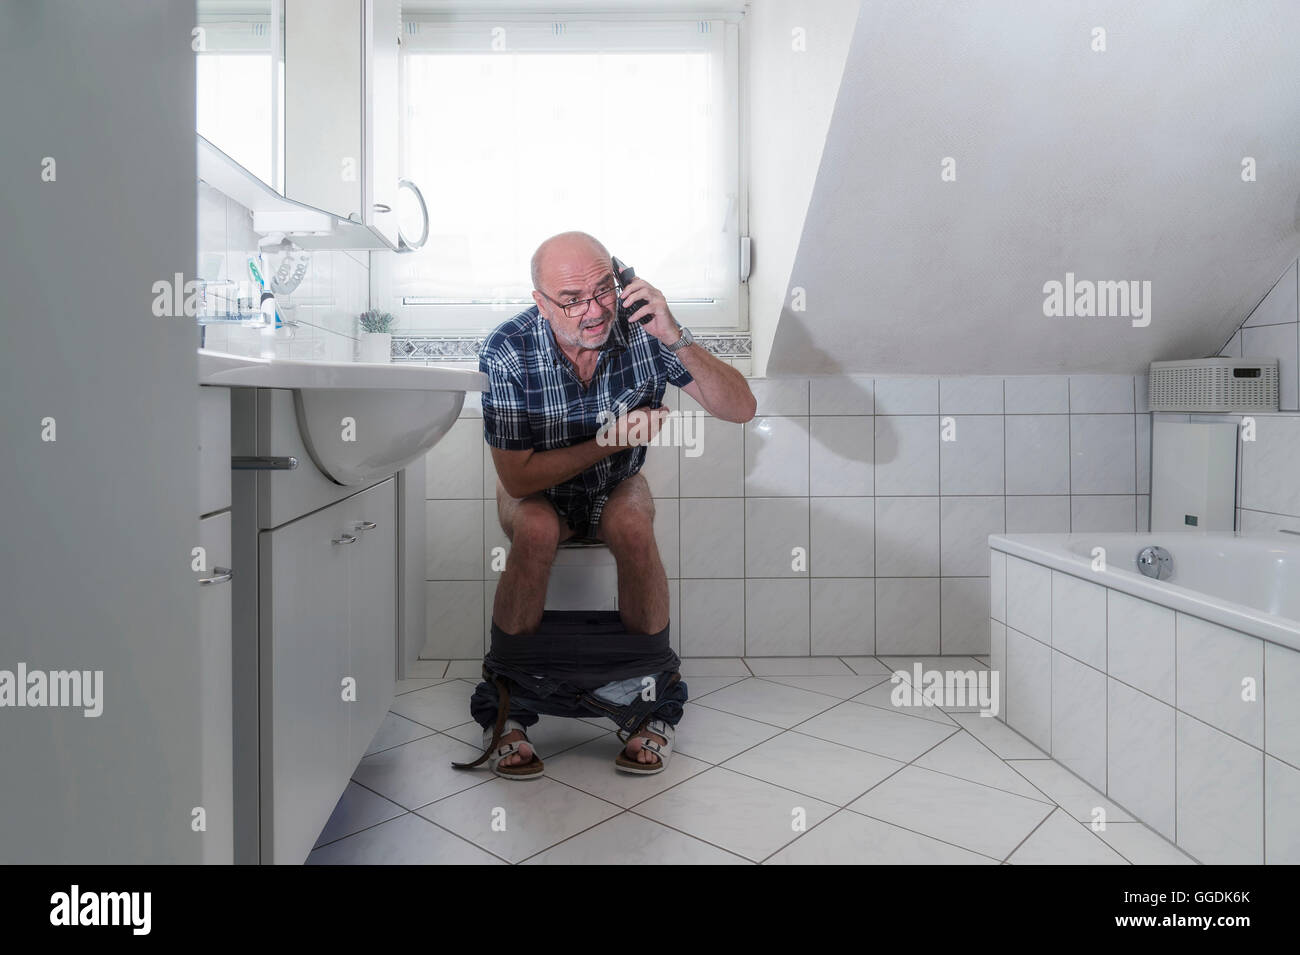 Hauts homme assis sur les toilettes, parlant dans un smartphone, Allemagne Banque D'Images